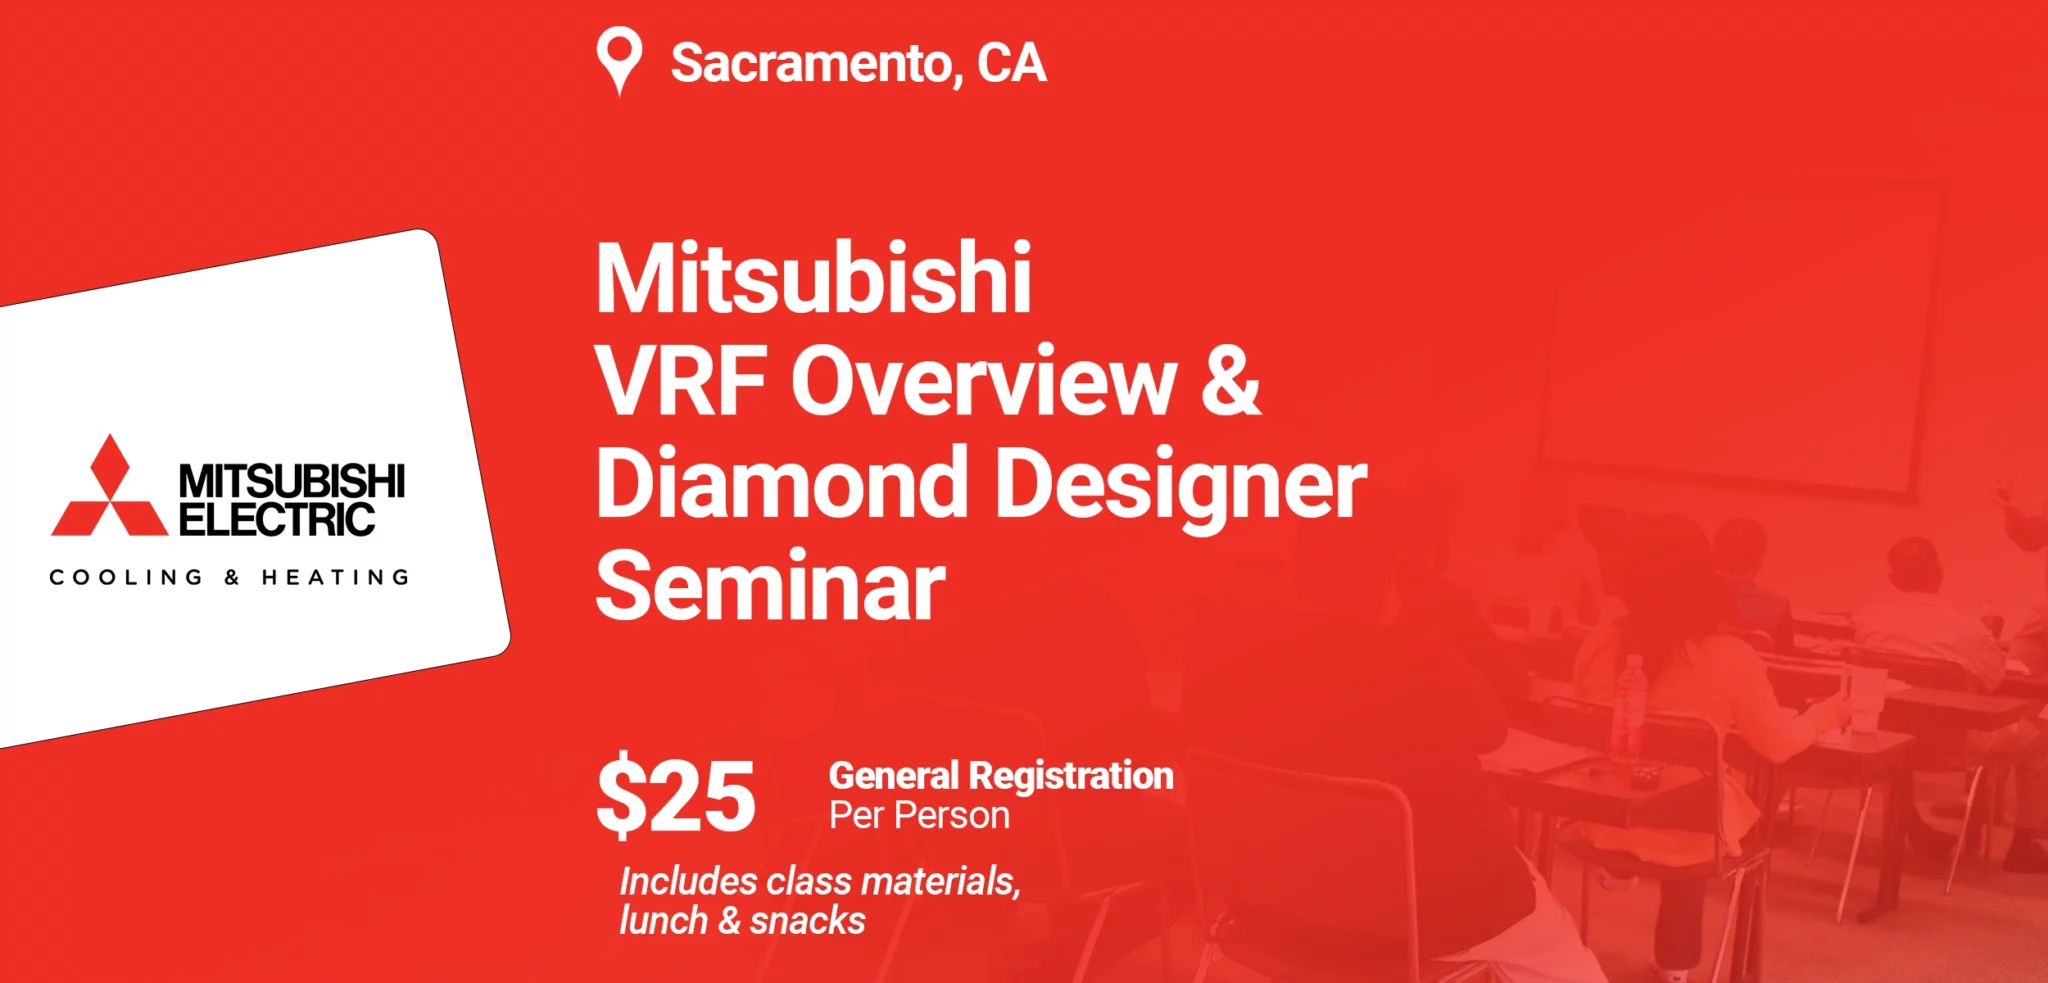 Mitsubishi VRF Overview and Diamond Designer Seminar – $25pp